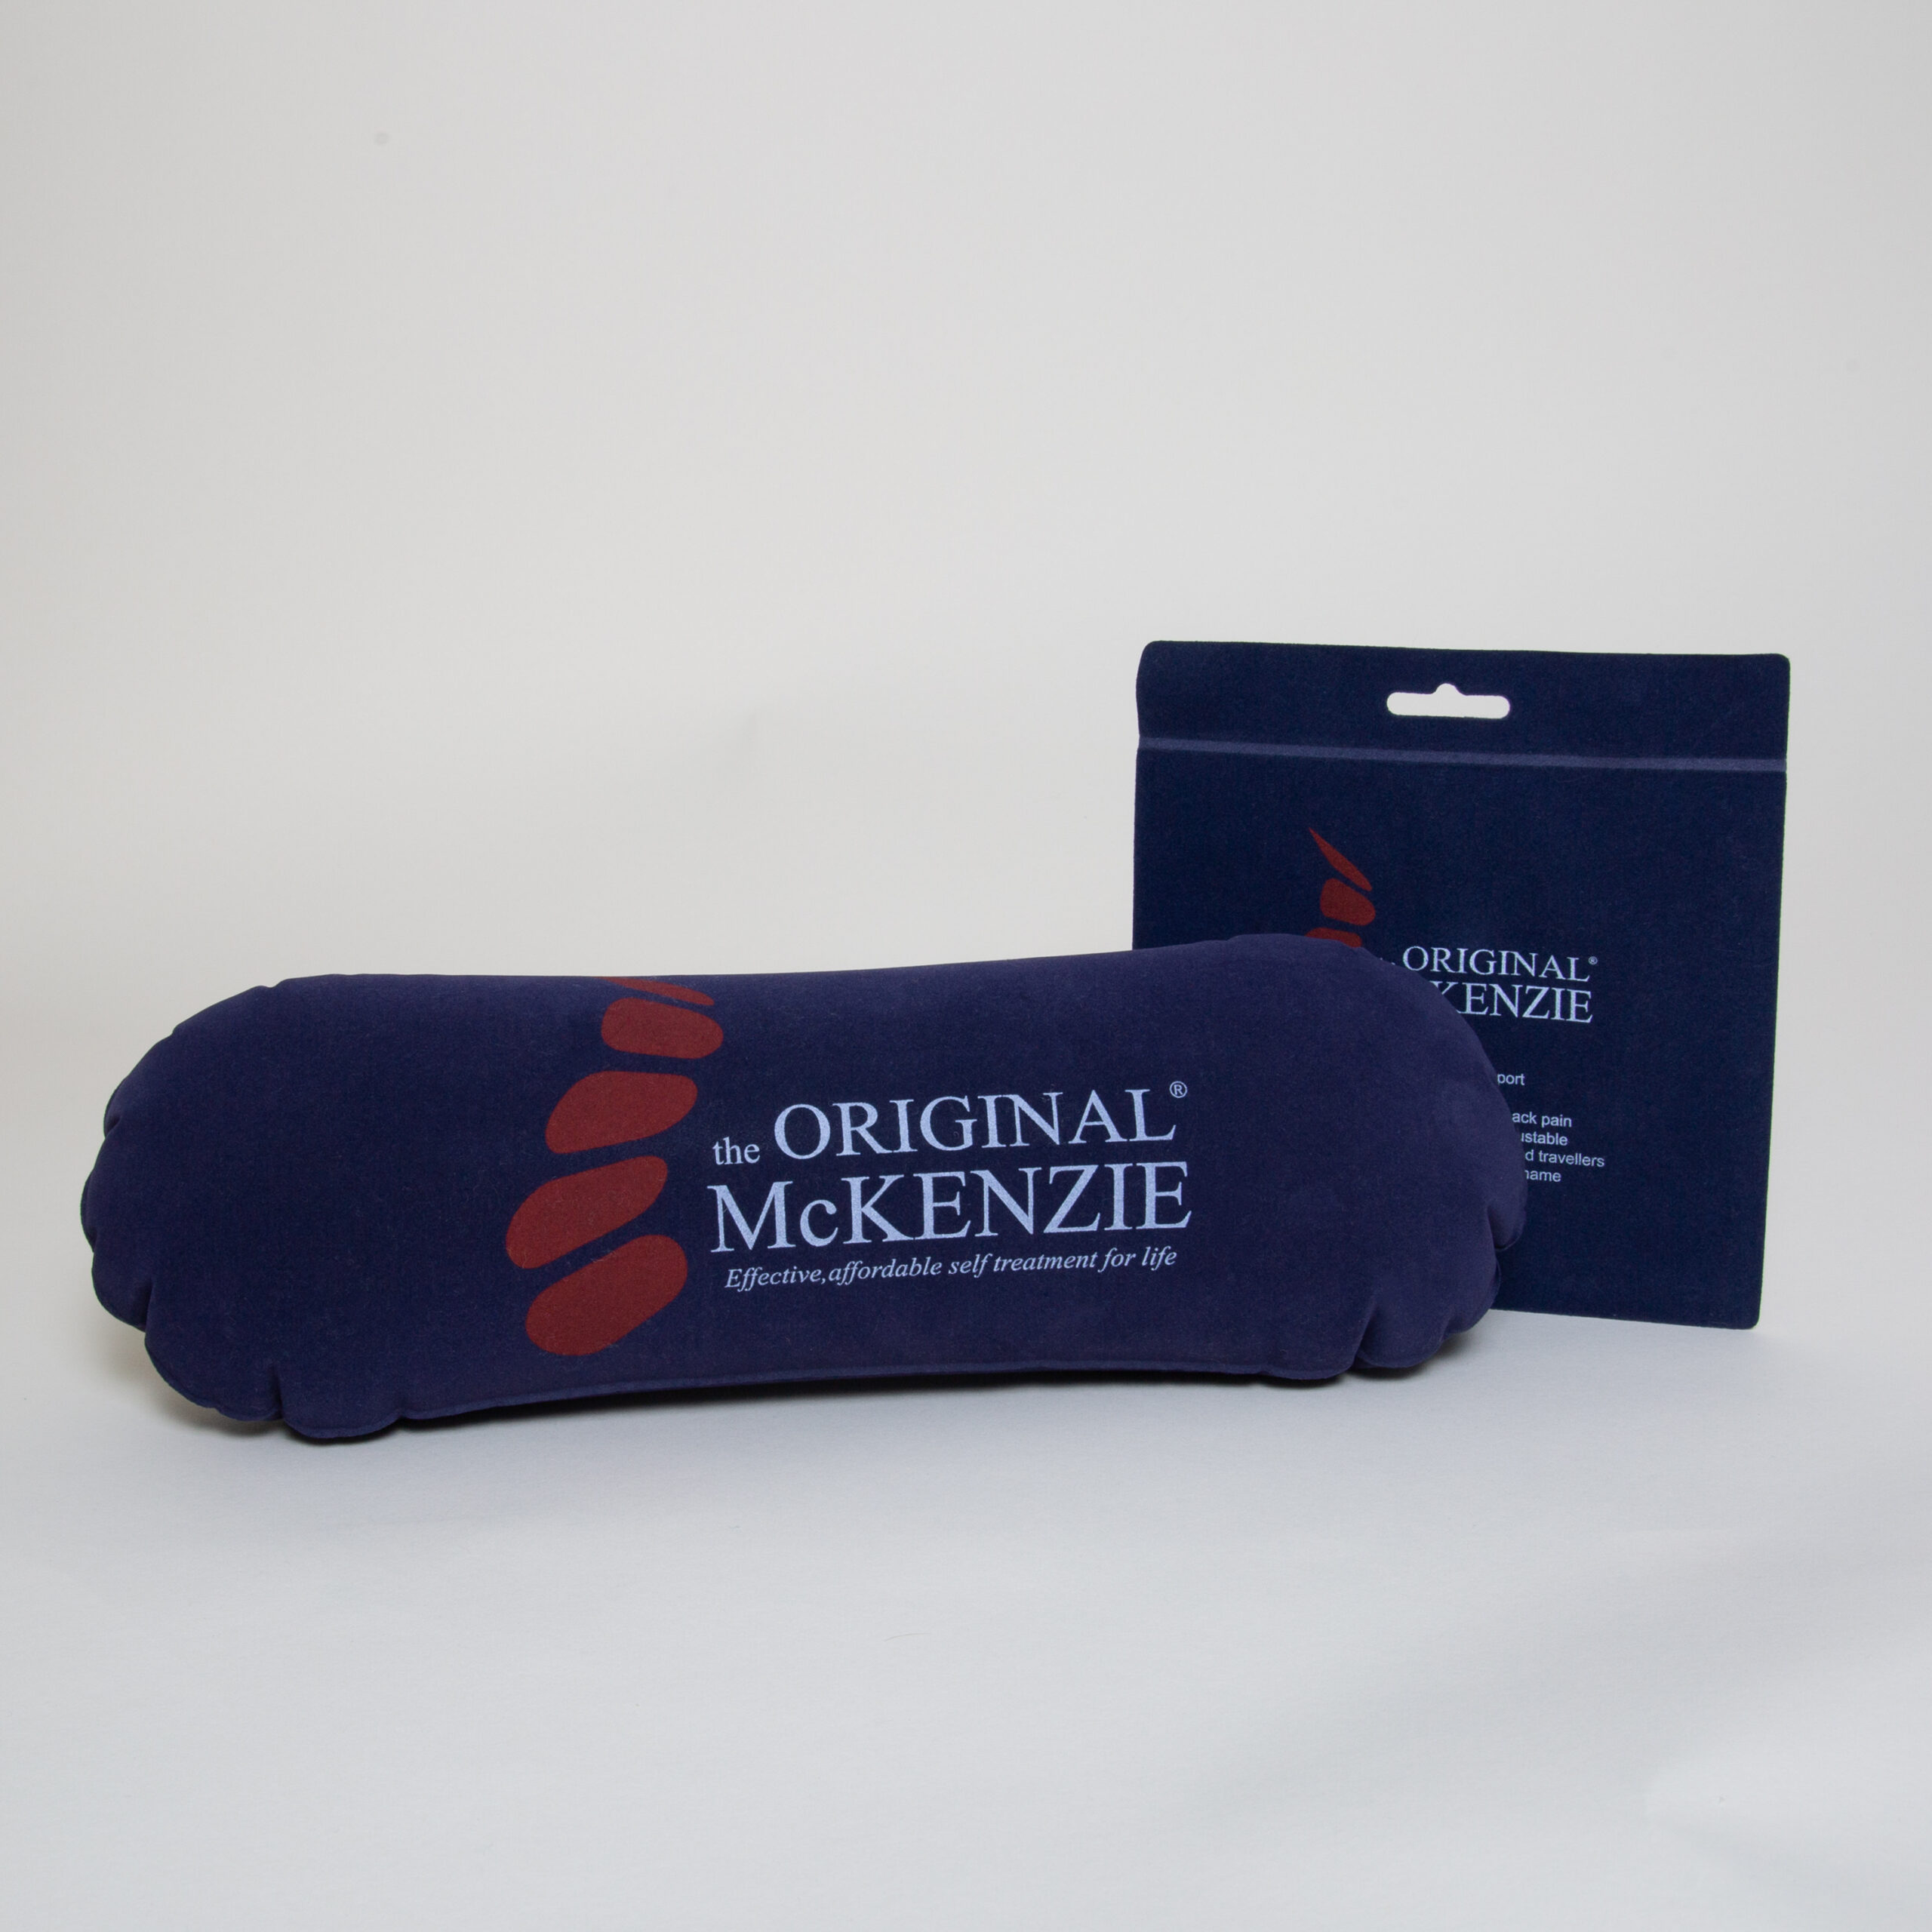 The Original McKenzie® Airback